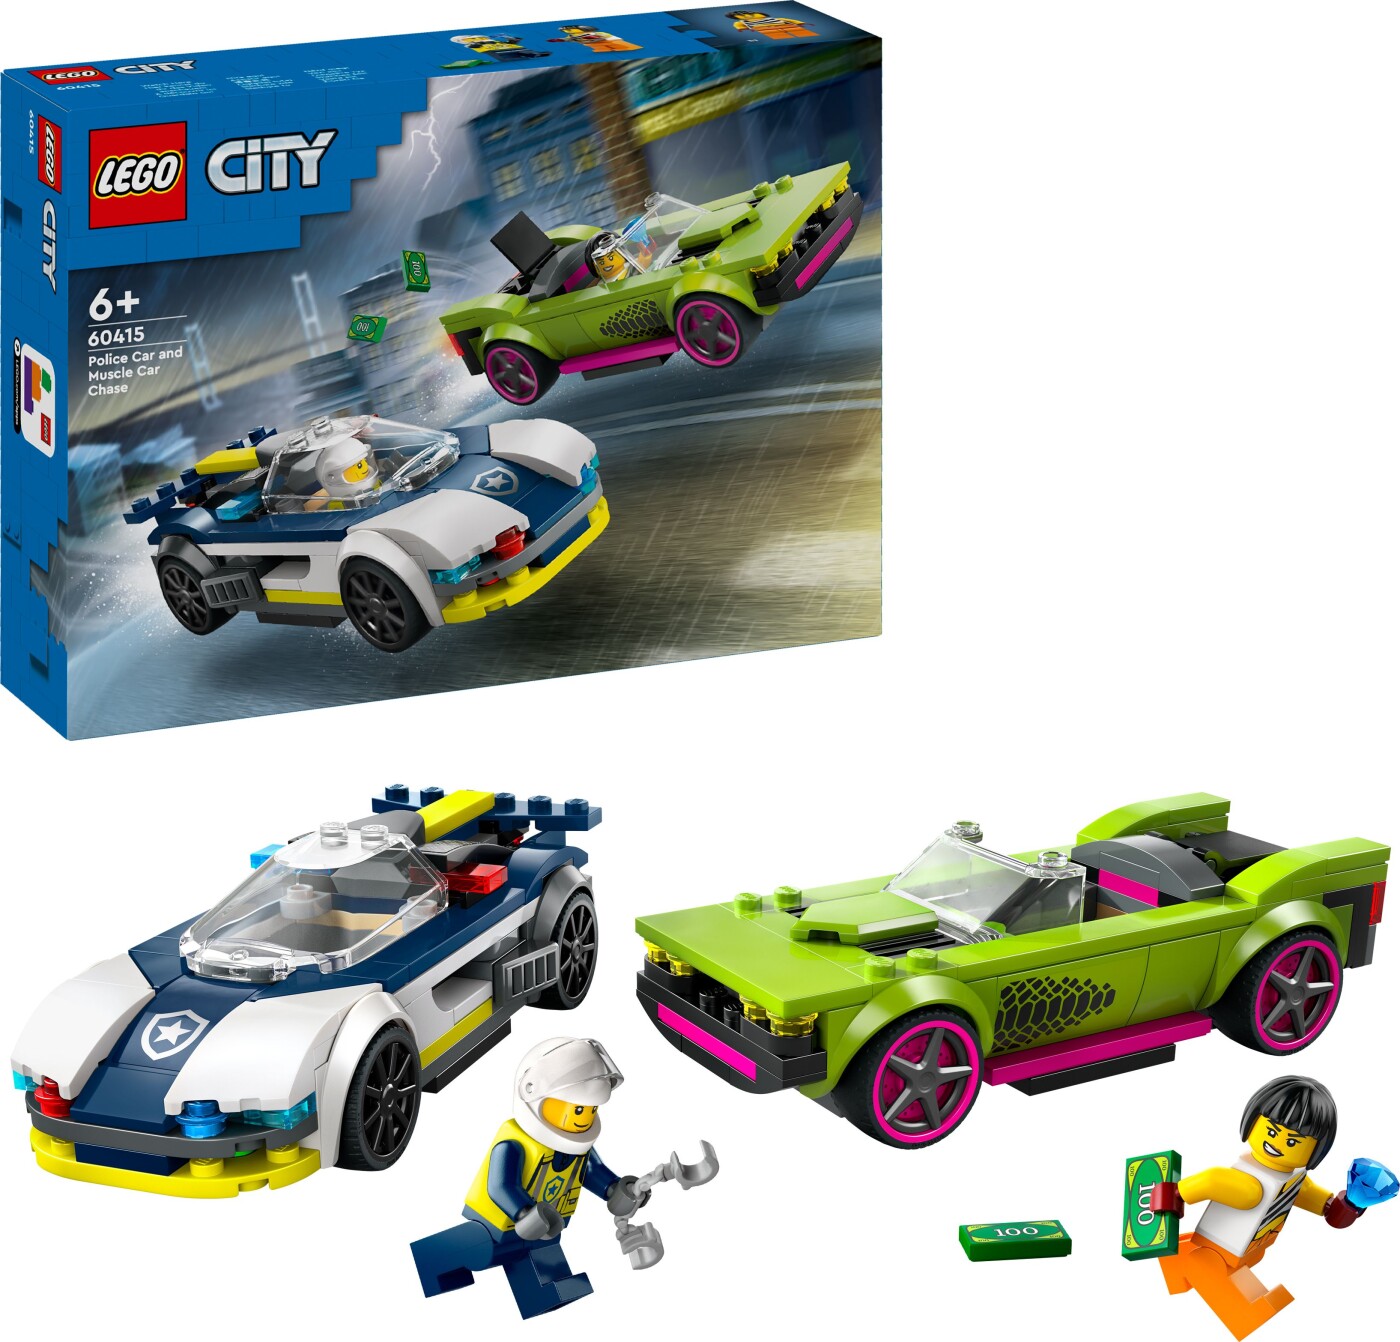 Billede af Lego City - Biljagt Med Politi Og Muskelbil - 60415